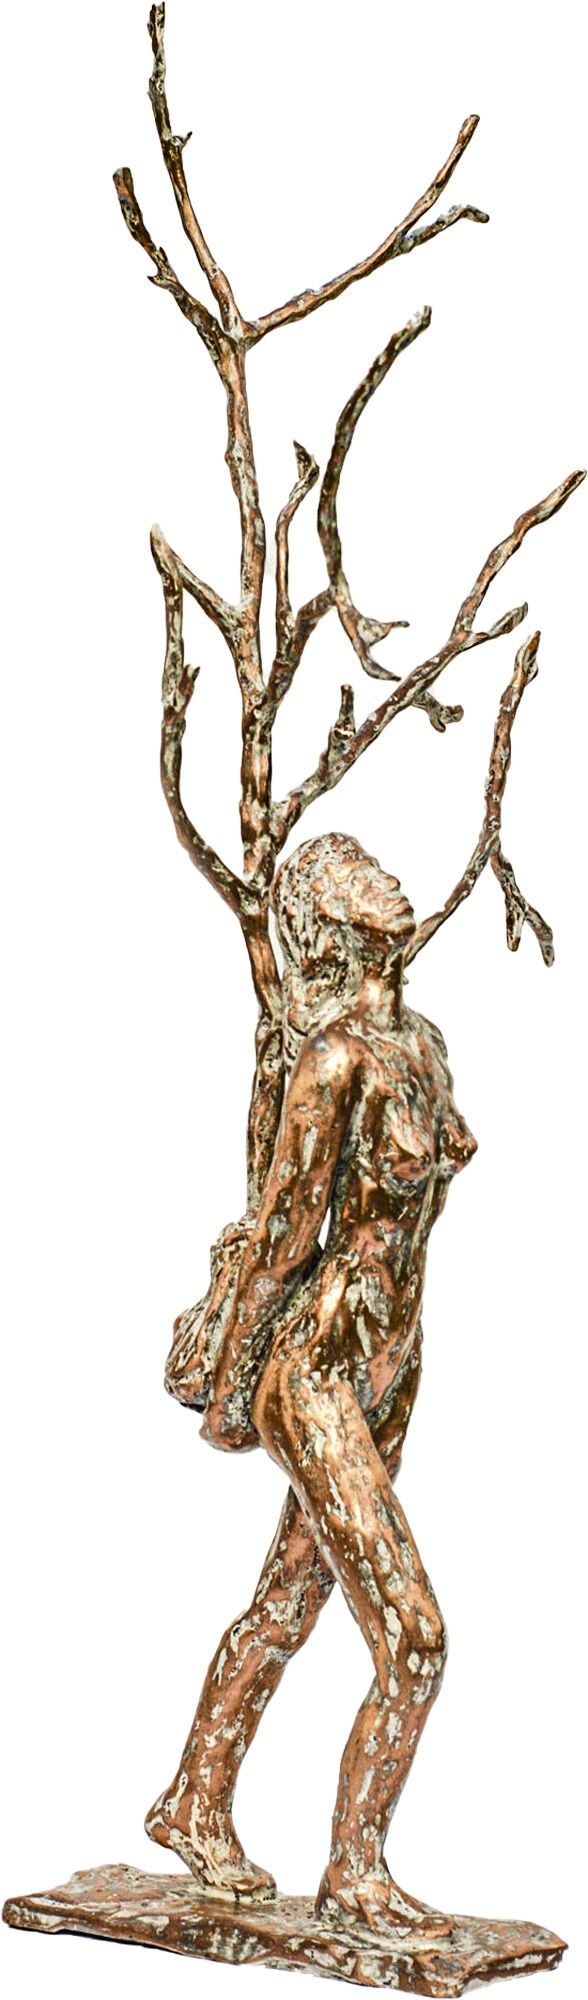 Objekt "The Tree Dancer" (2020), bronze von Dagmar Vogt